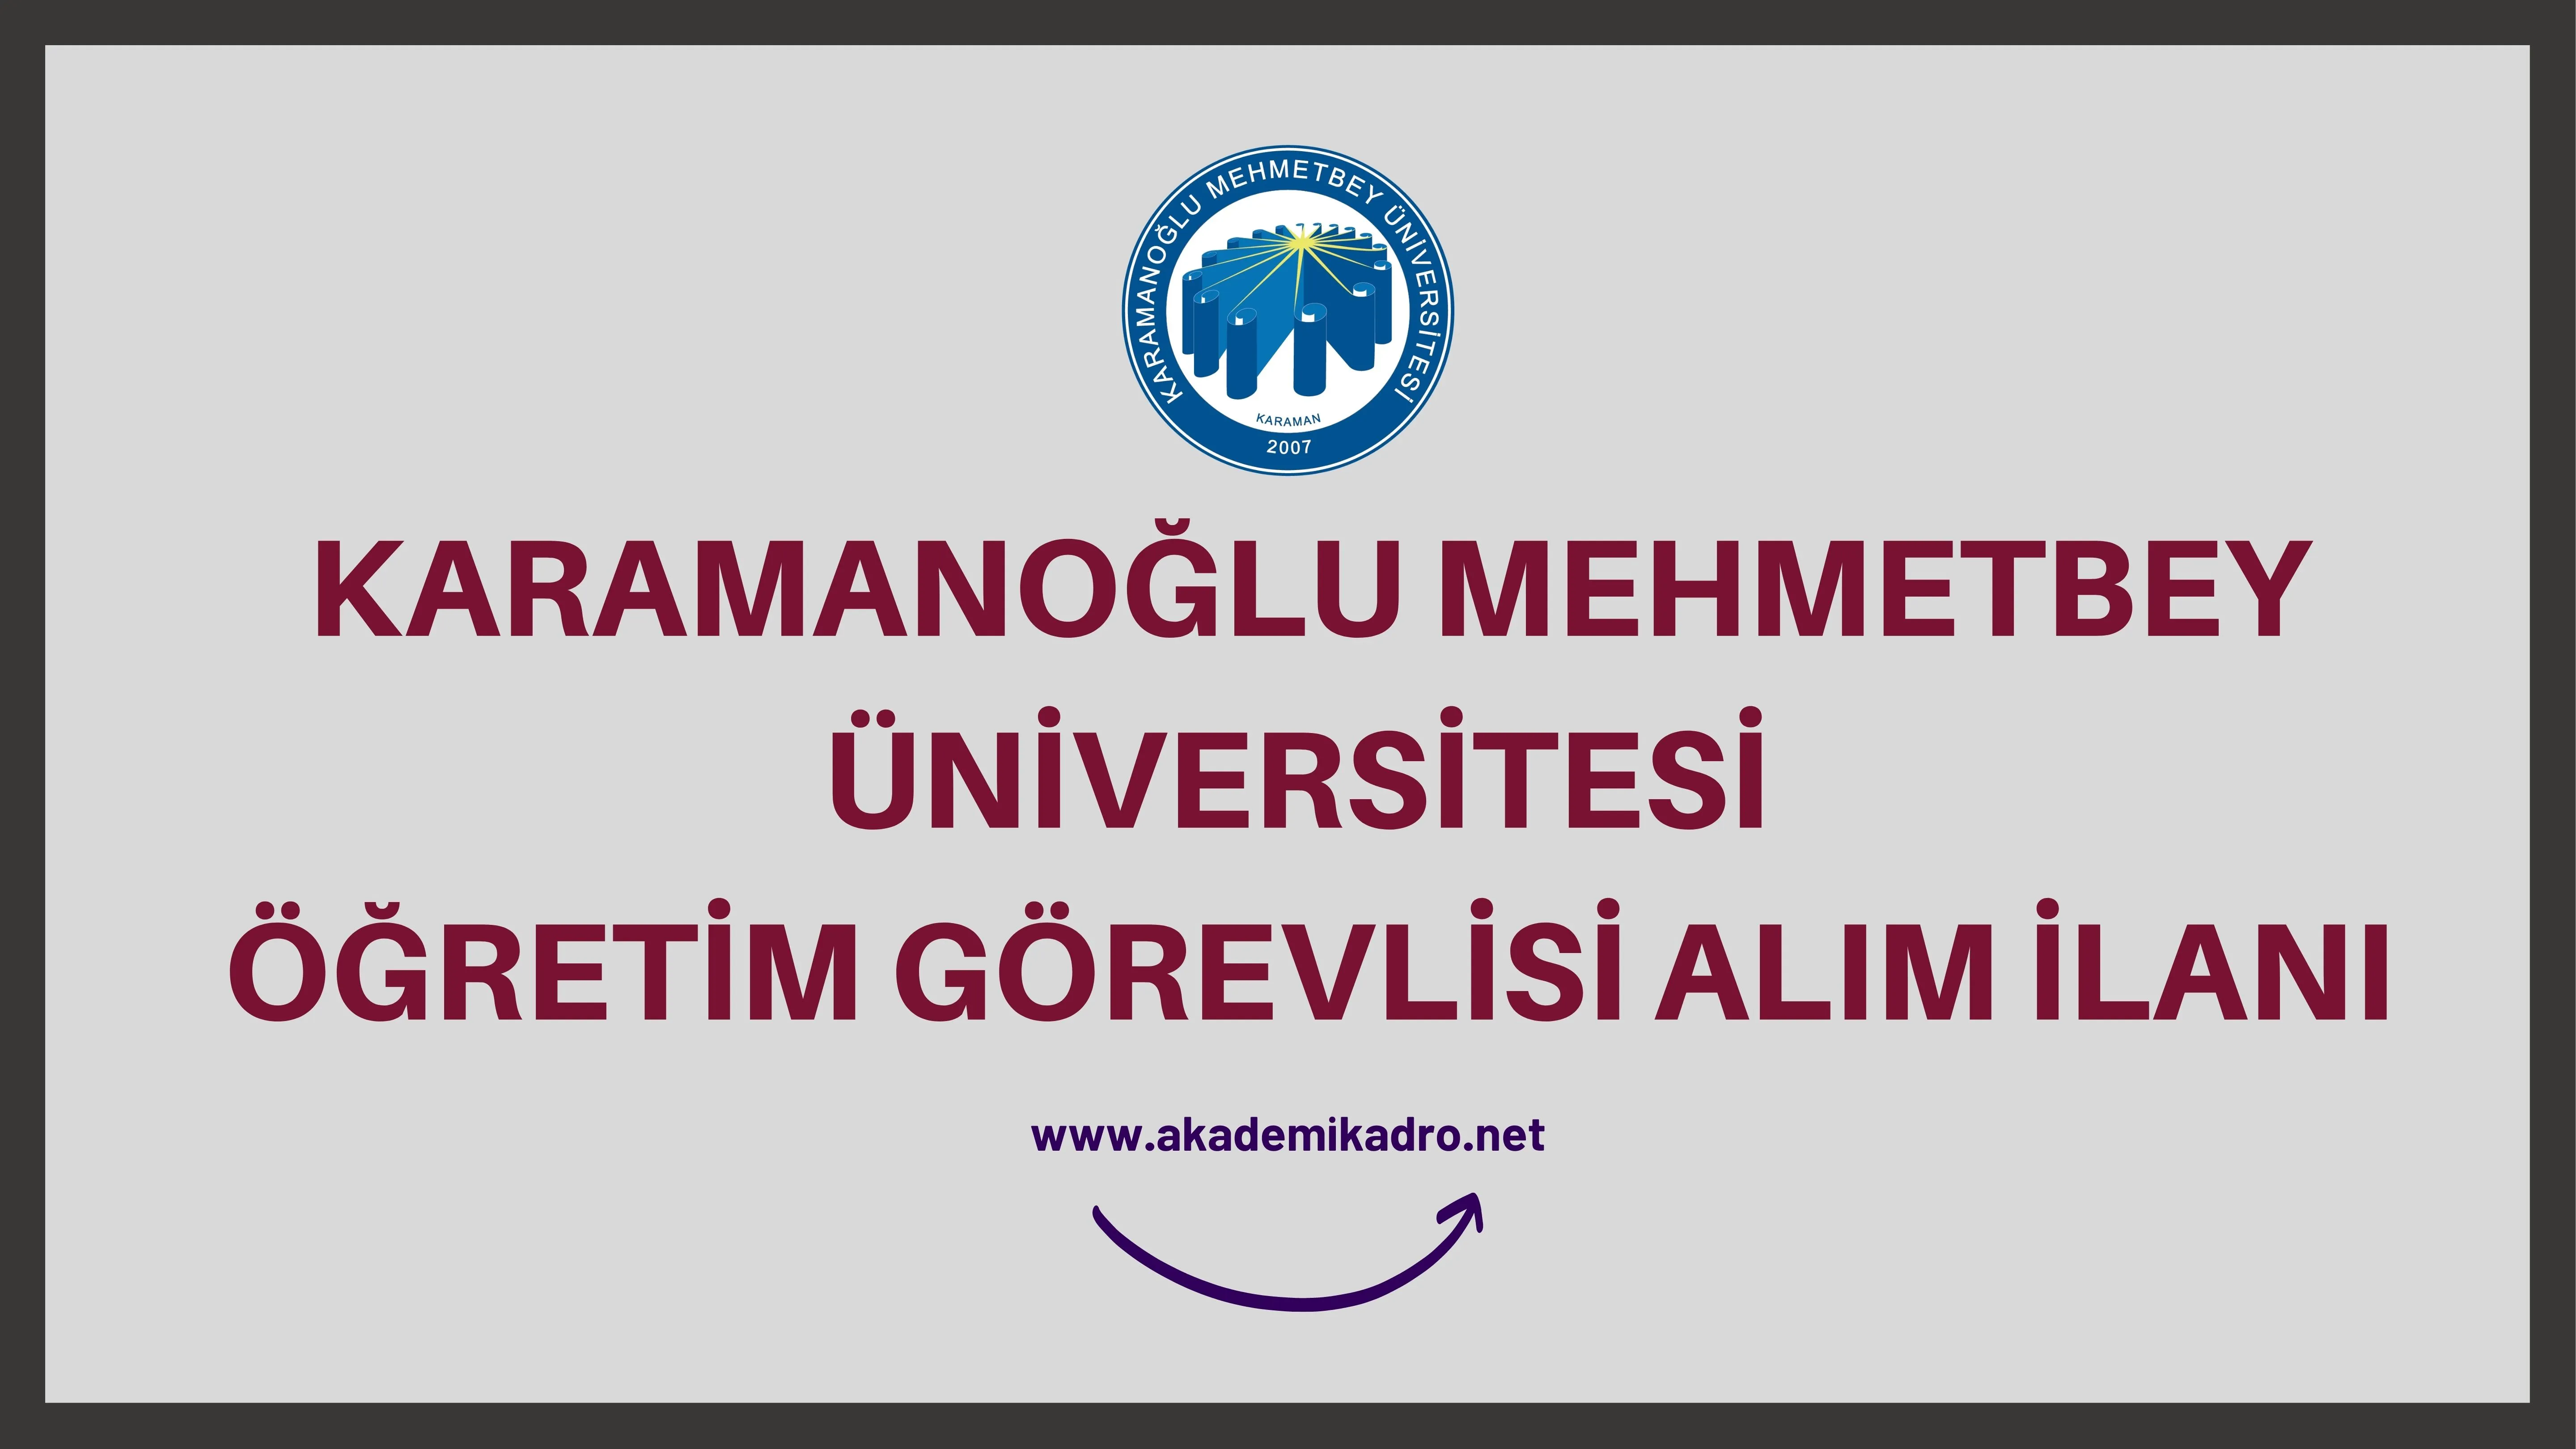 Karamanoğlu Mehmetbey Üniversitesi birçok alandan 9 Öğretim görevlisi alacak.